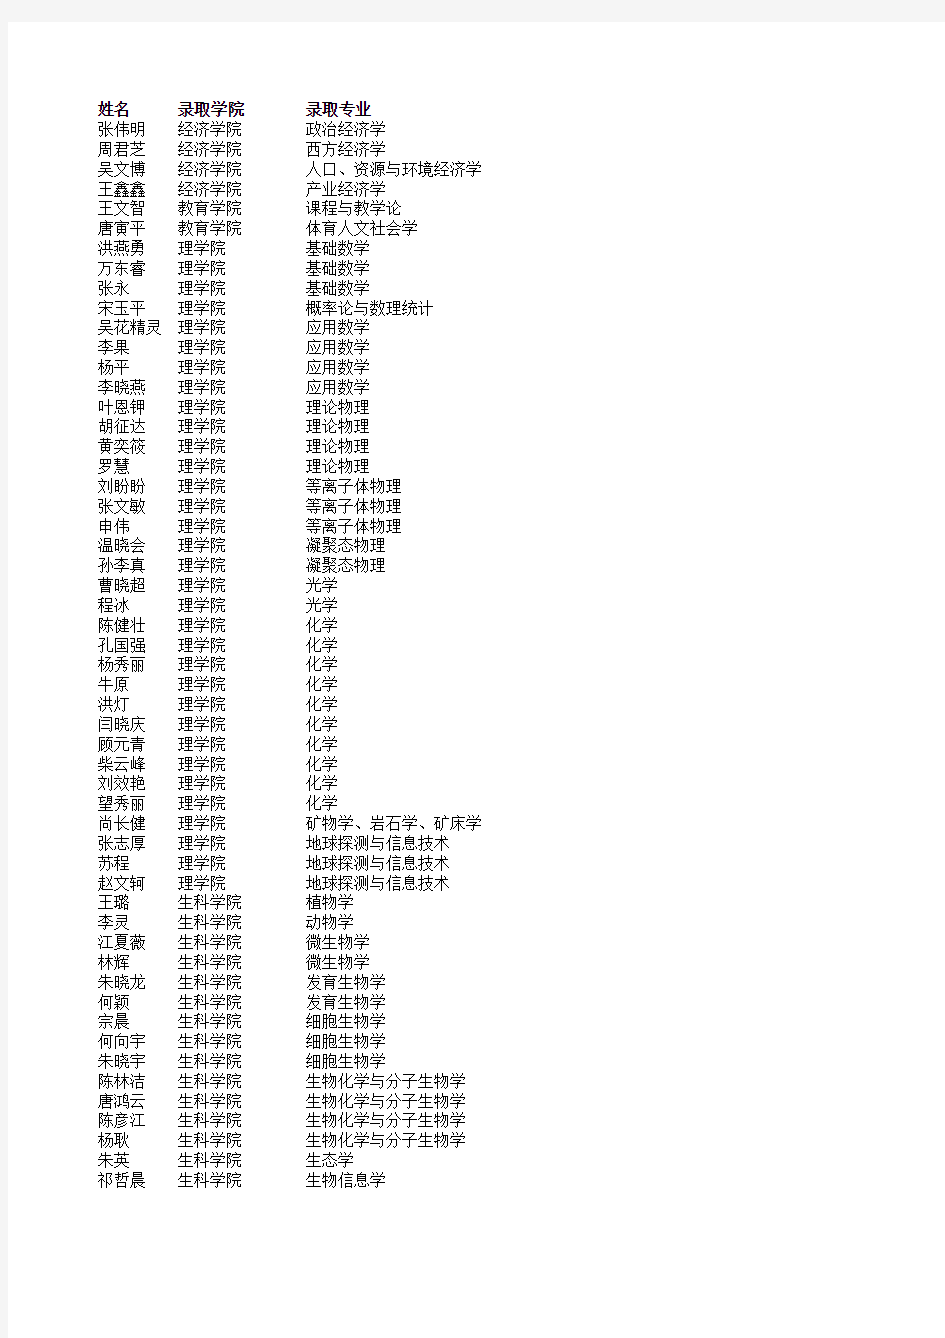 浙江大学2010年春季拟录取博士生名单